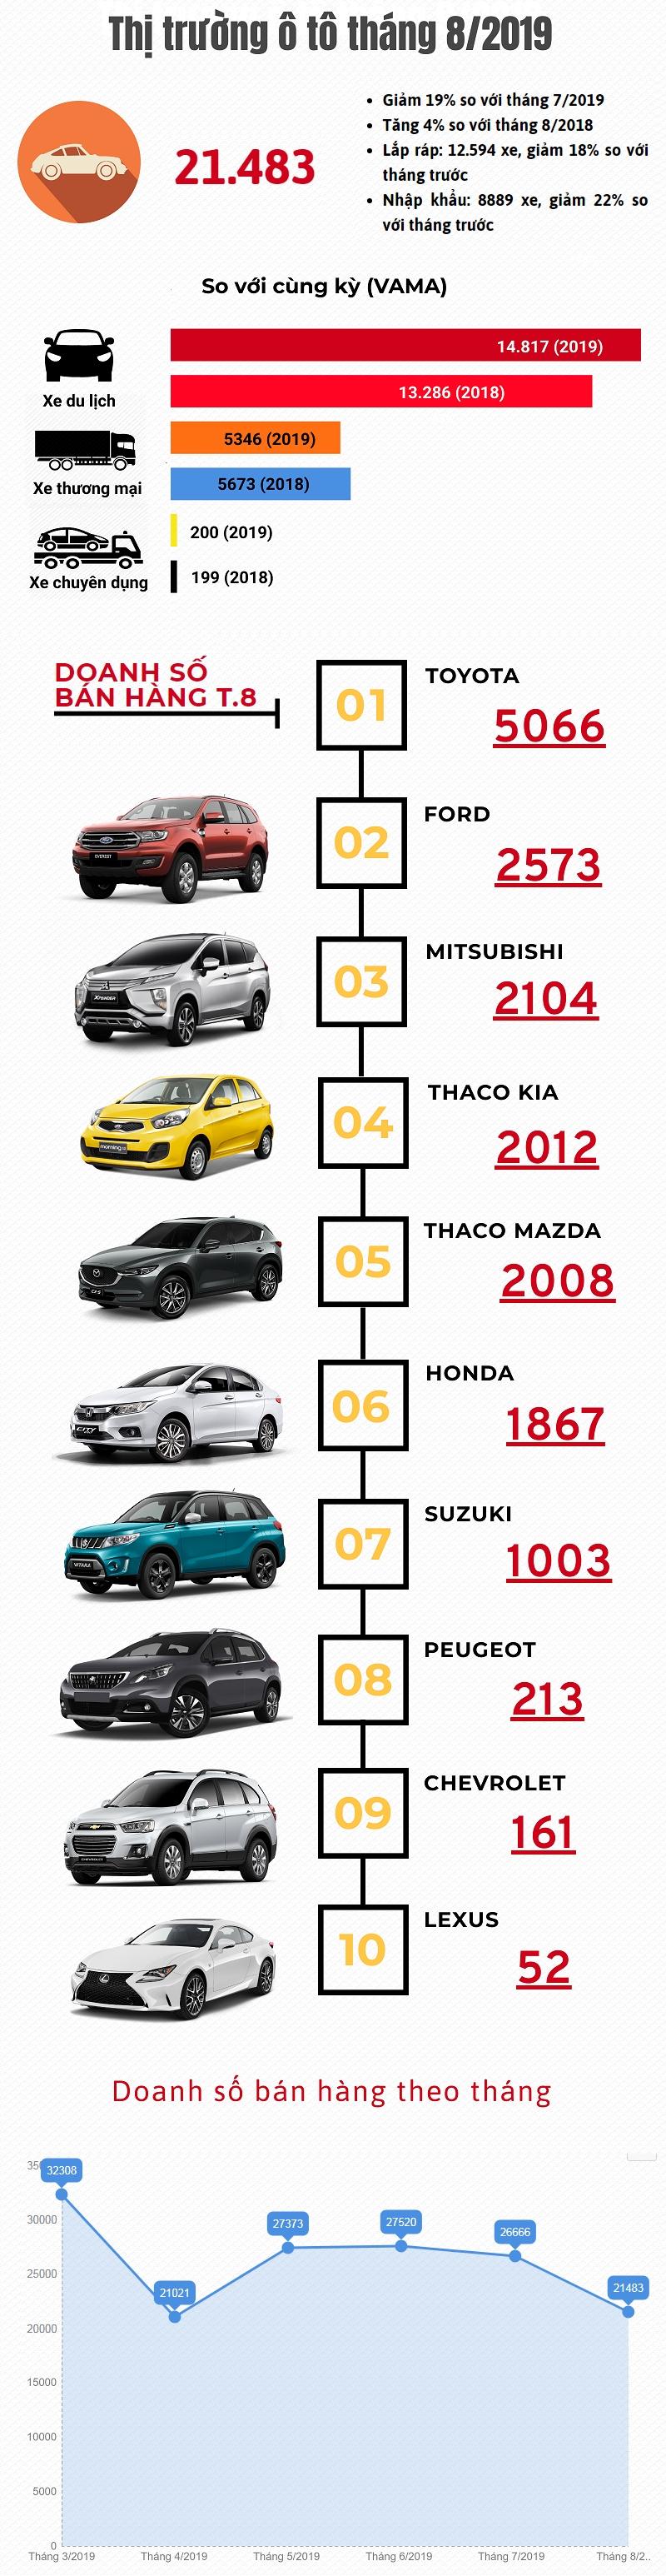 [Infographic] Thị trường ô tô tháng 8/2019: Giảm tháng thứ hai liên tiếp